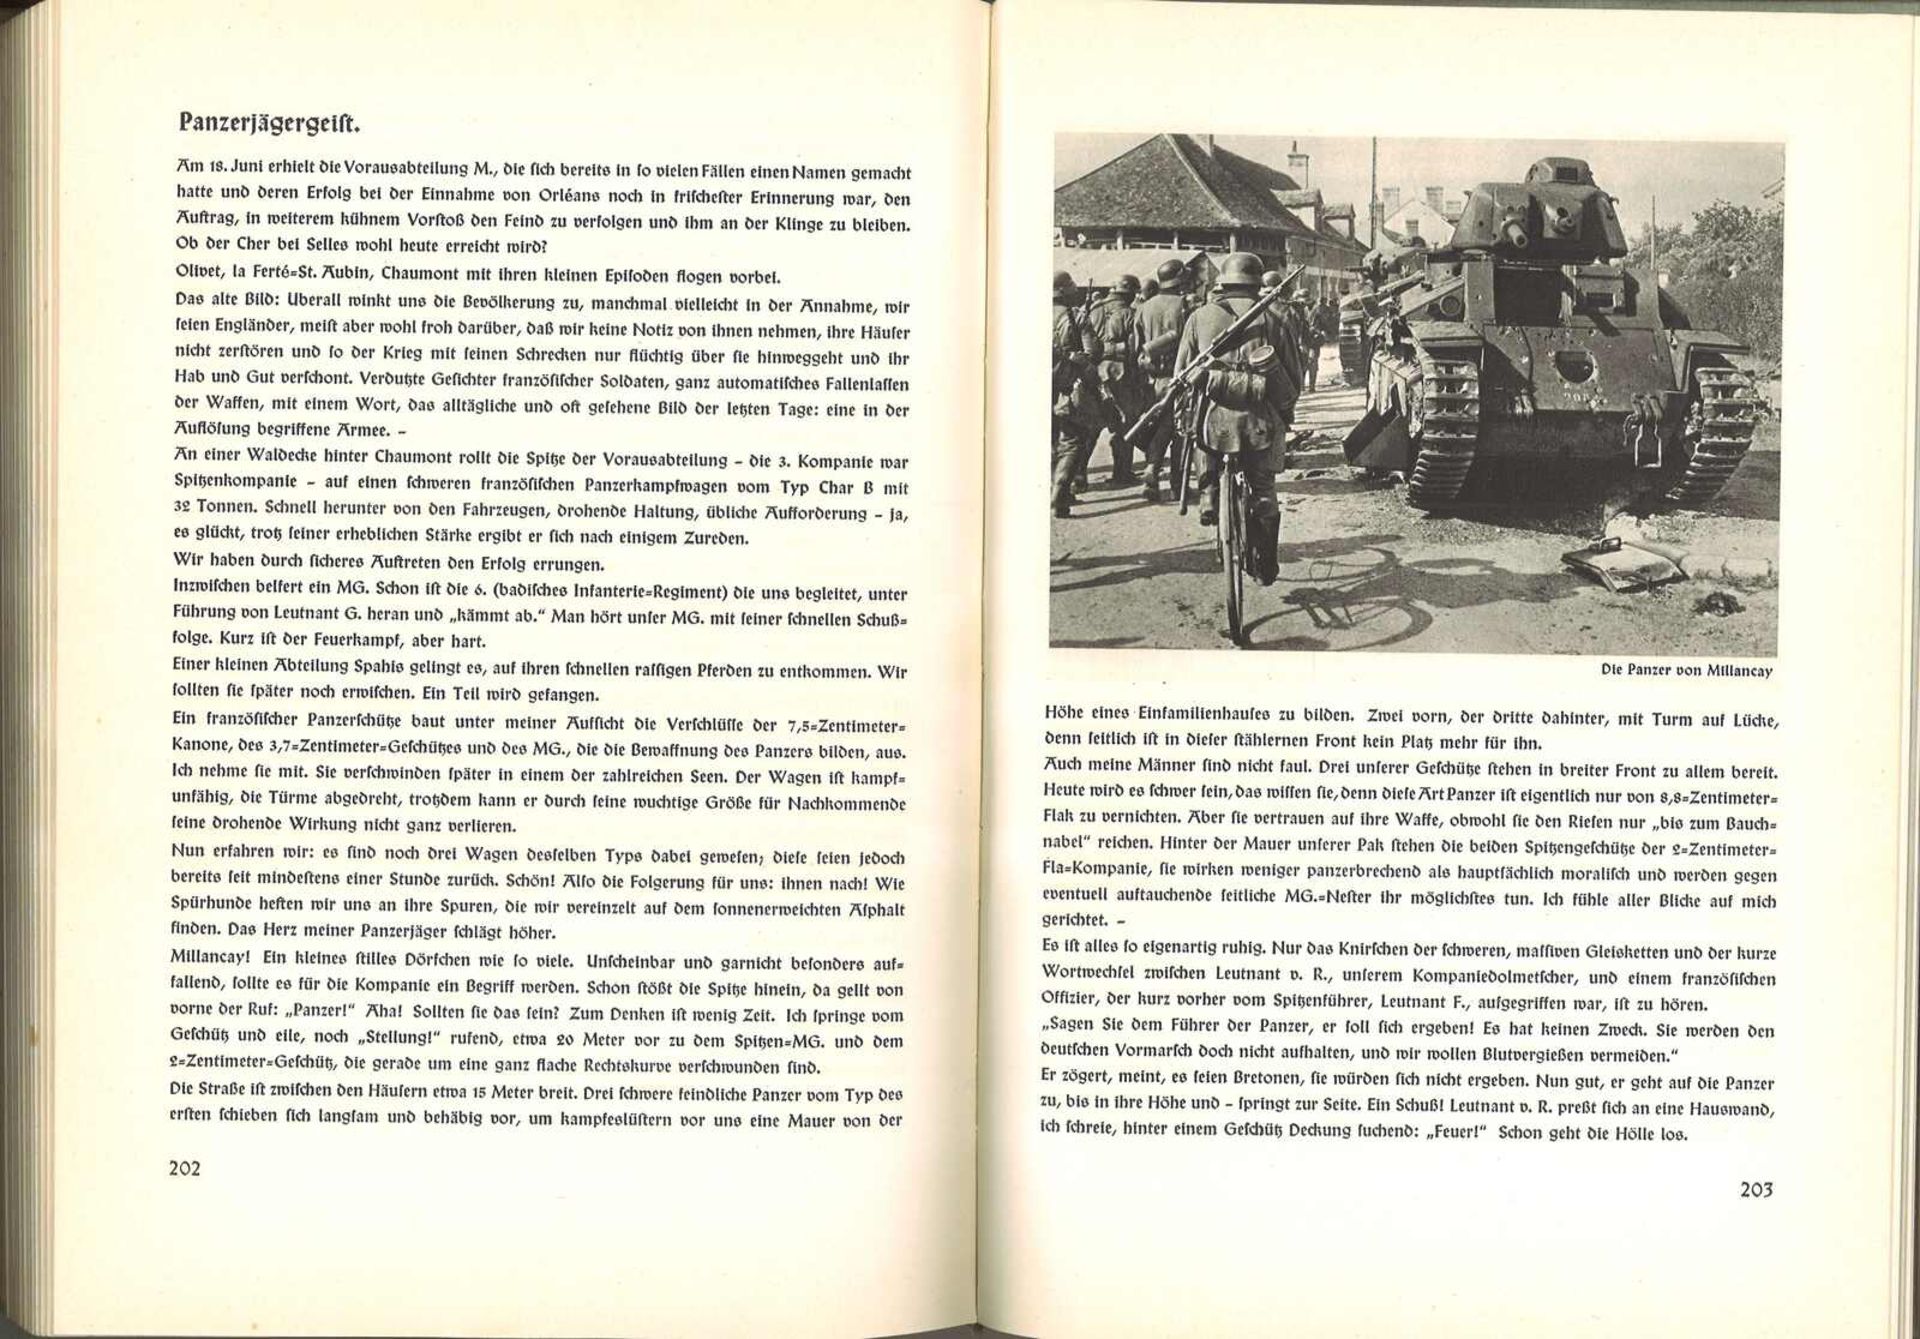 "Division Sintzenich", Erlebnisberichte aus dem Feldzug in Frankreich 1940."Division Sintzenich", r - Bild 2 aus 2